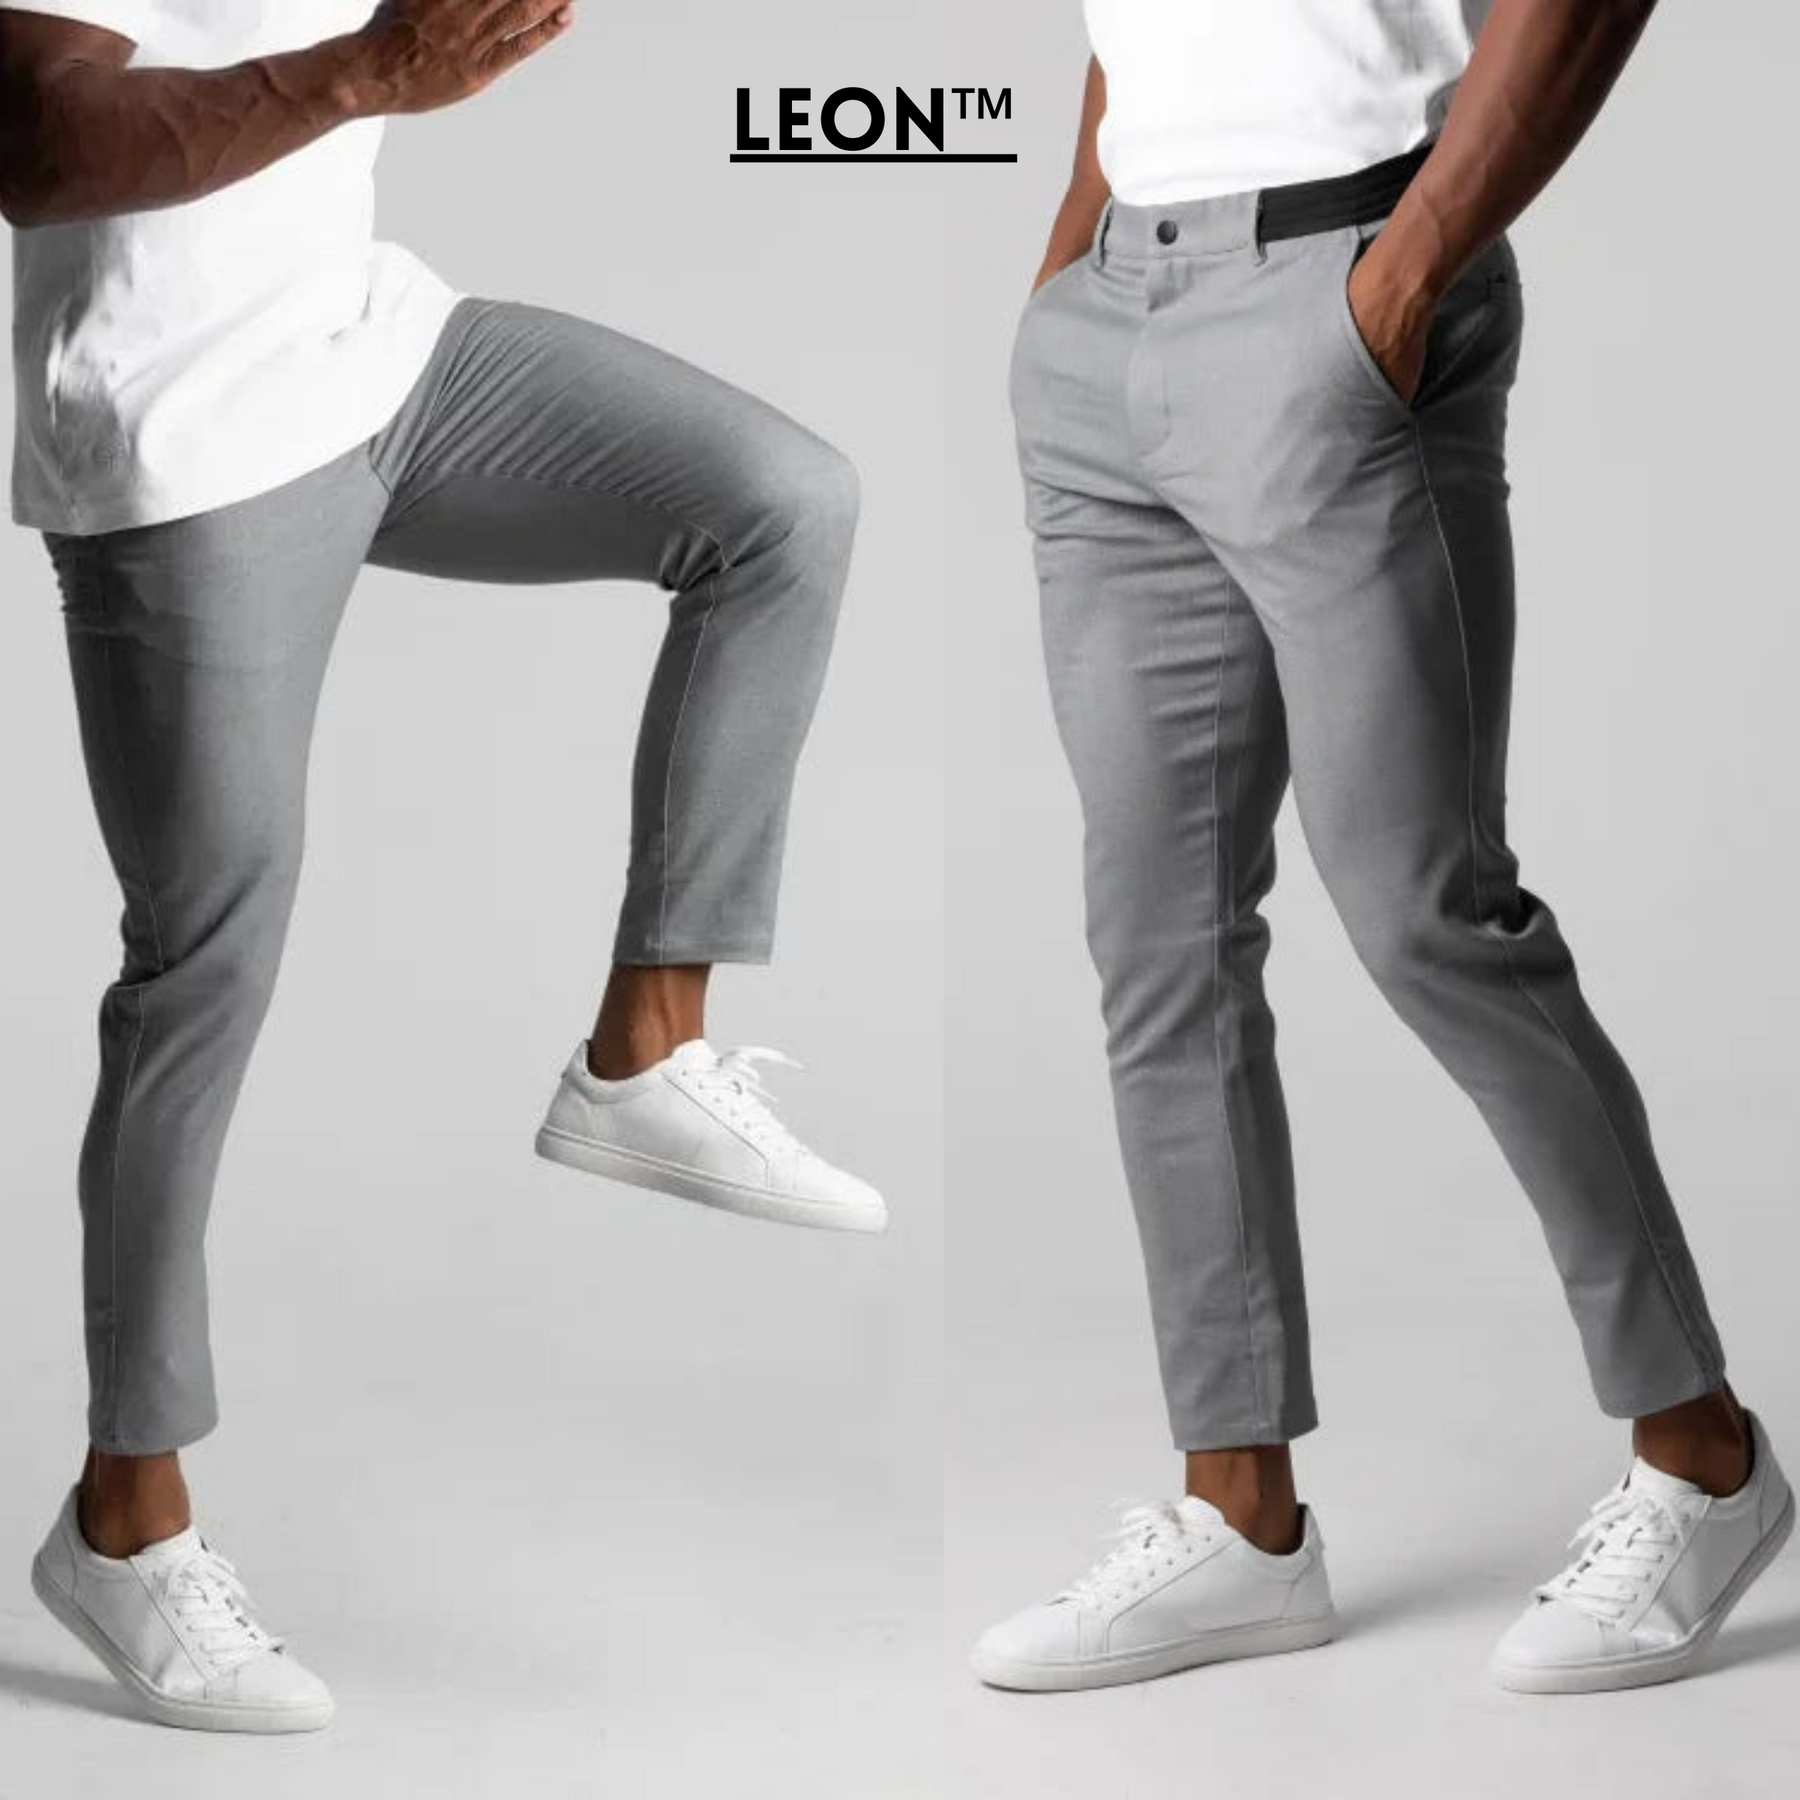 Leon Active Stretch Pants – Aussie Troves